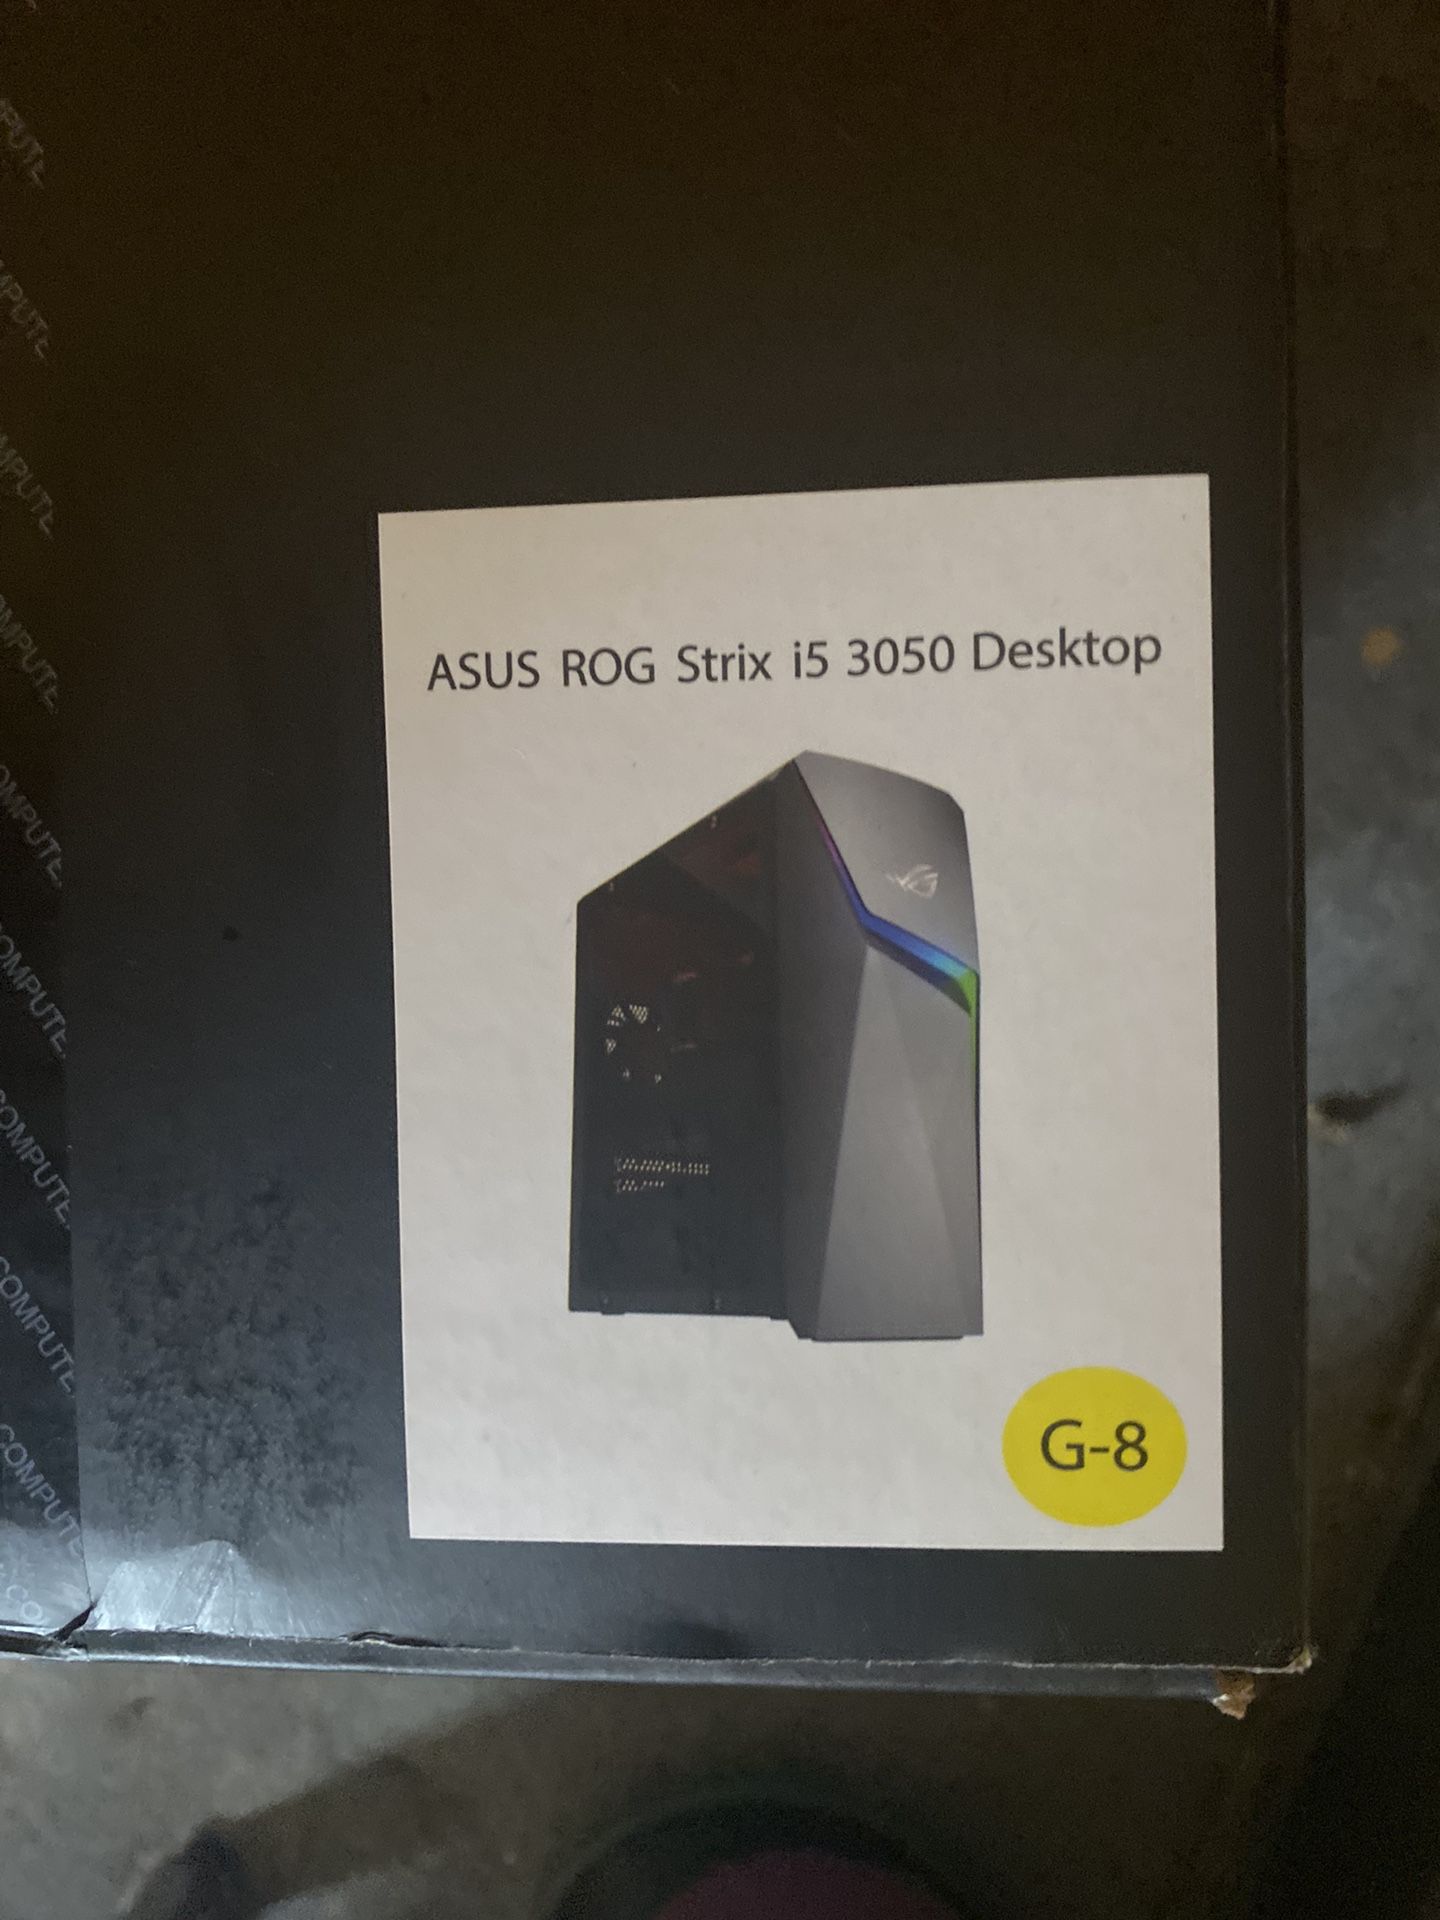 ASUS ROG Strix i5 3050 Desktop